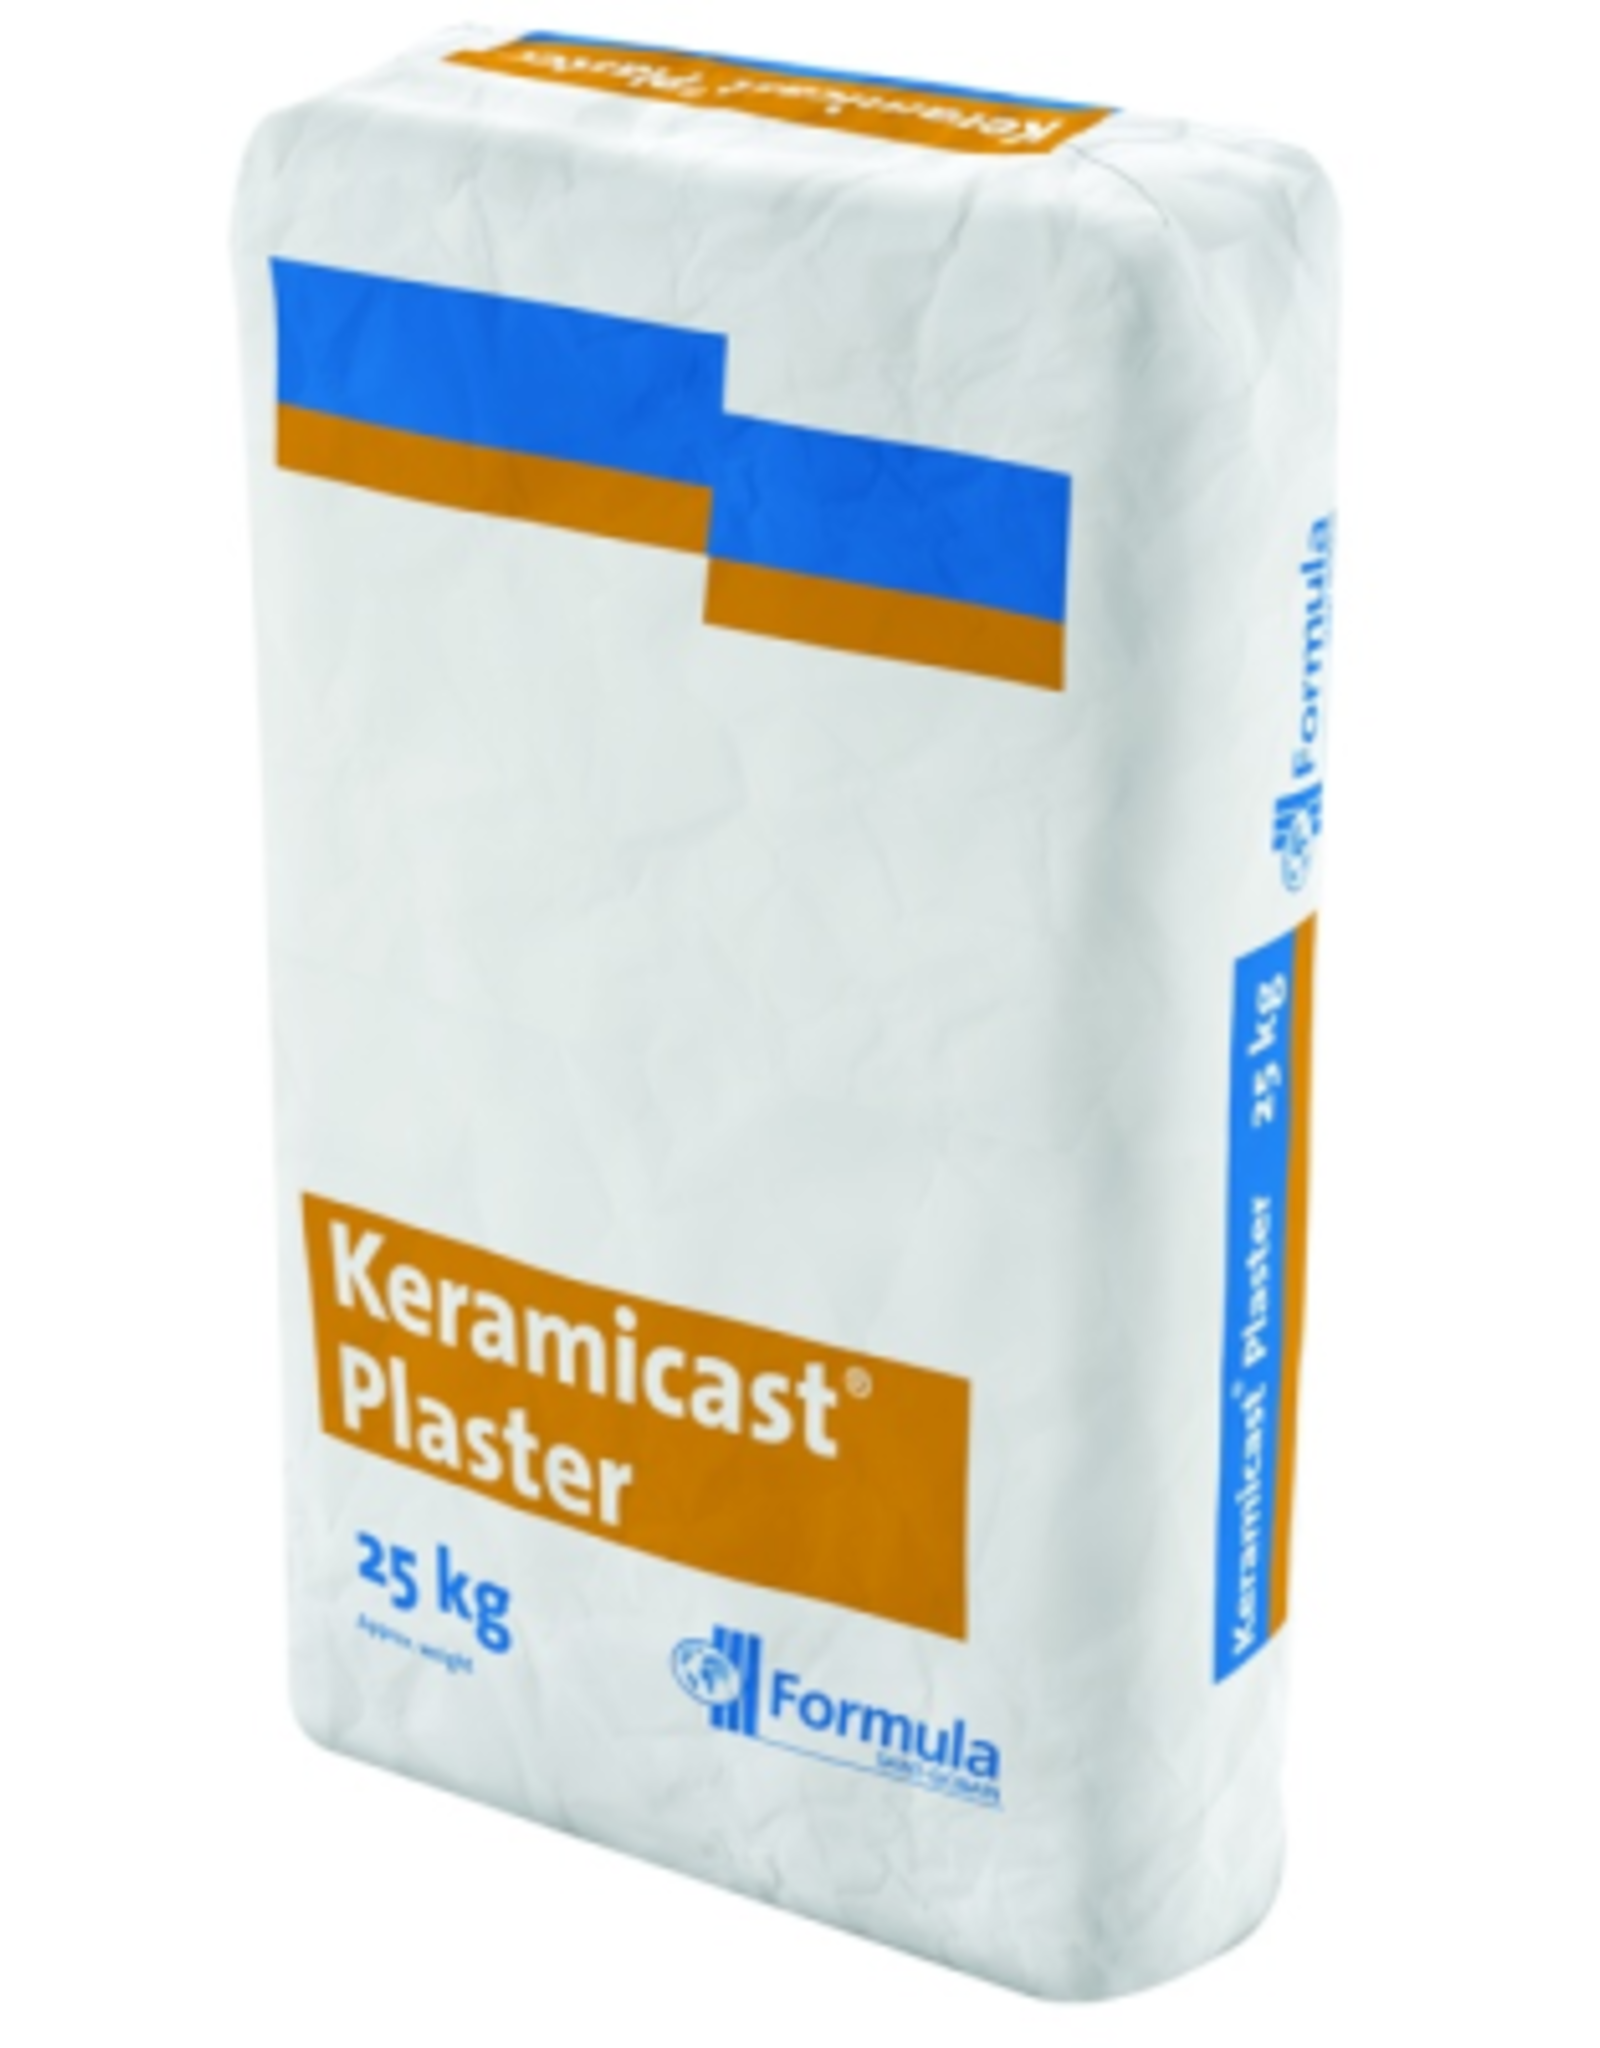 Keramicast plaster